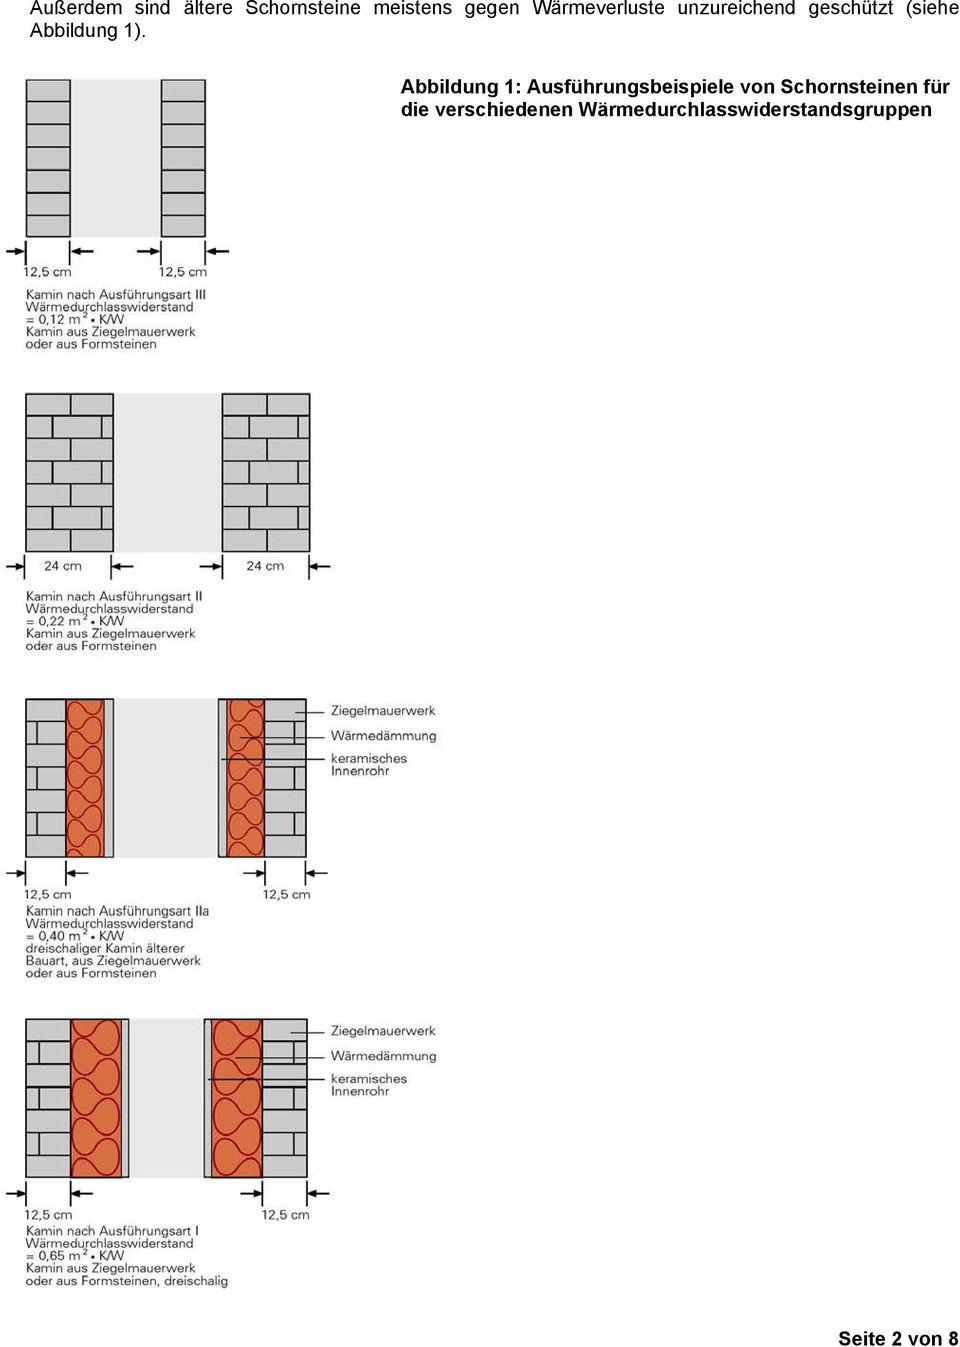 Abbildung 1: Ausführungsbeispiele von Schornsteinen für